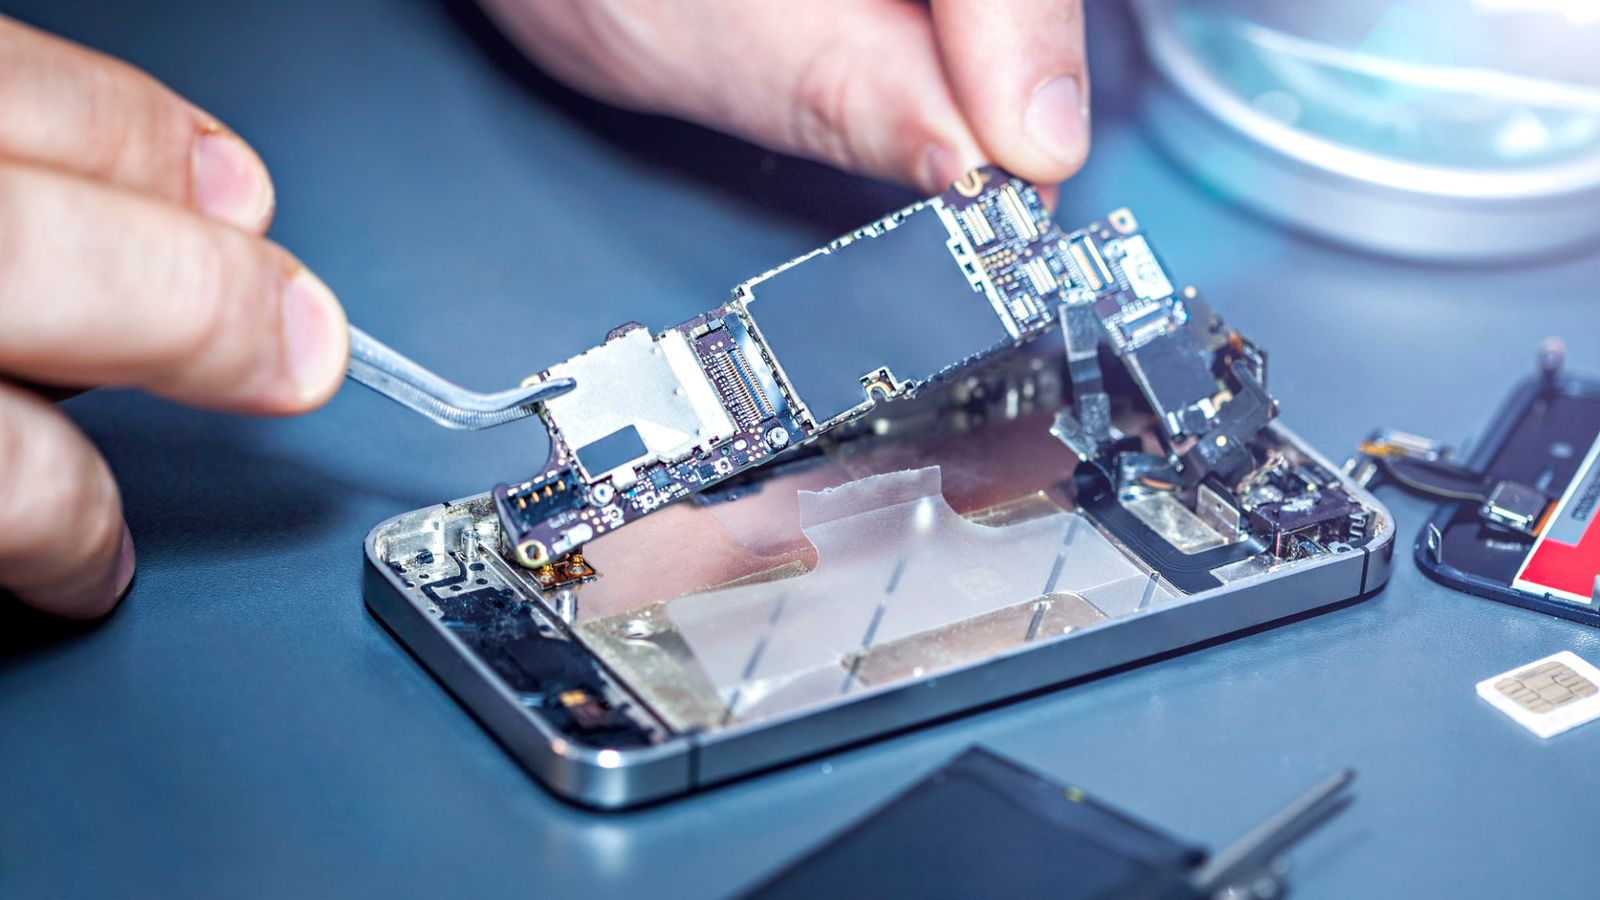 Apple và Công ty chip Wi-Fi Broadcom phải trả $1,1 tỷ cho đại học Caltech vì vi phạm bằng sáng chế trên iPhone